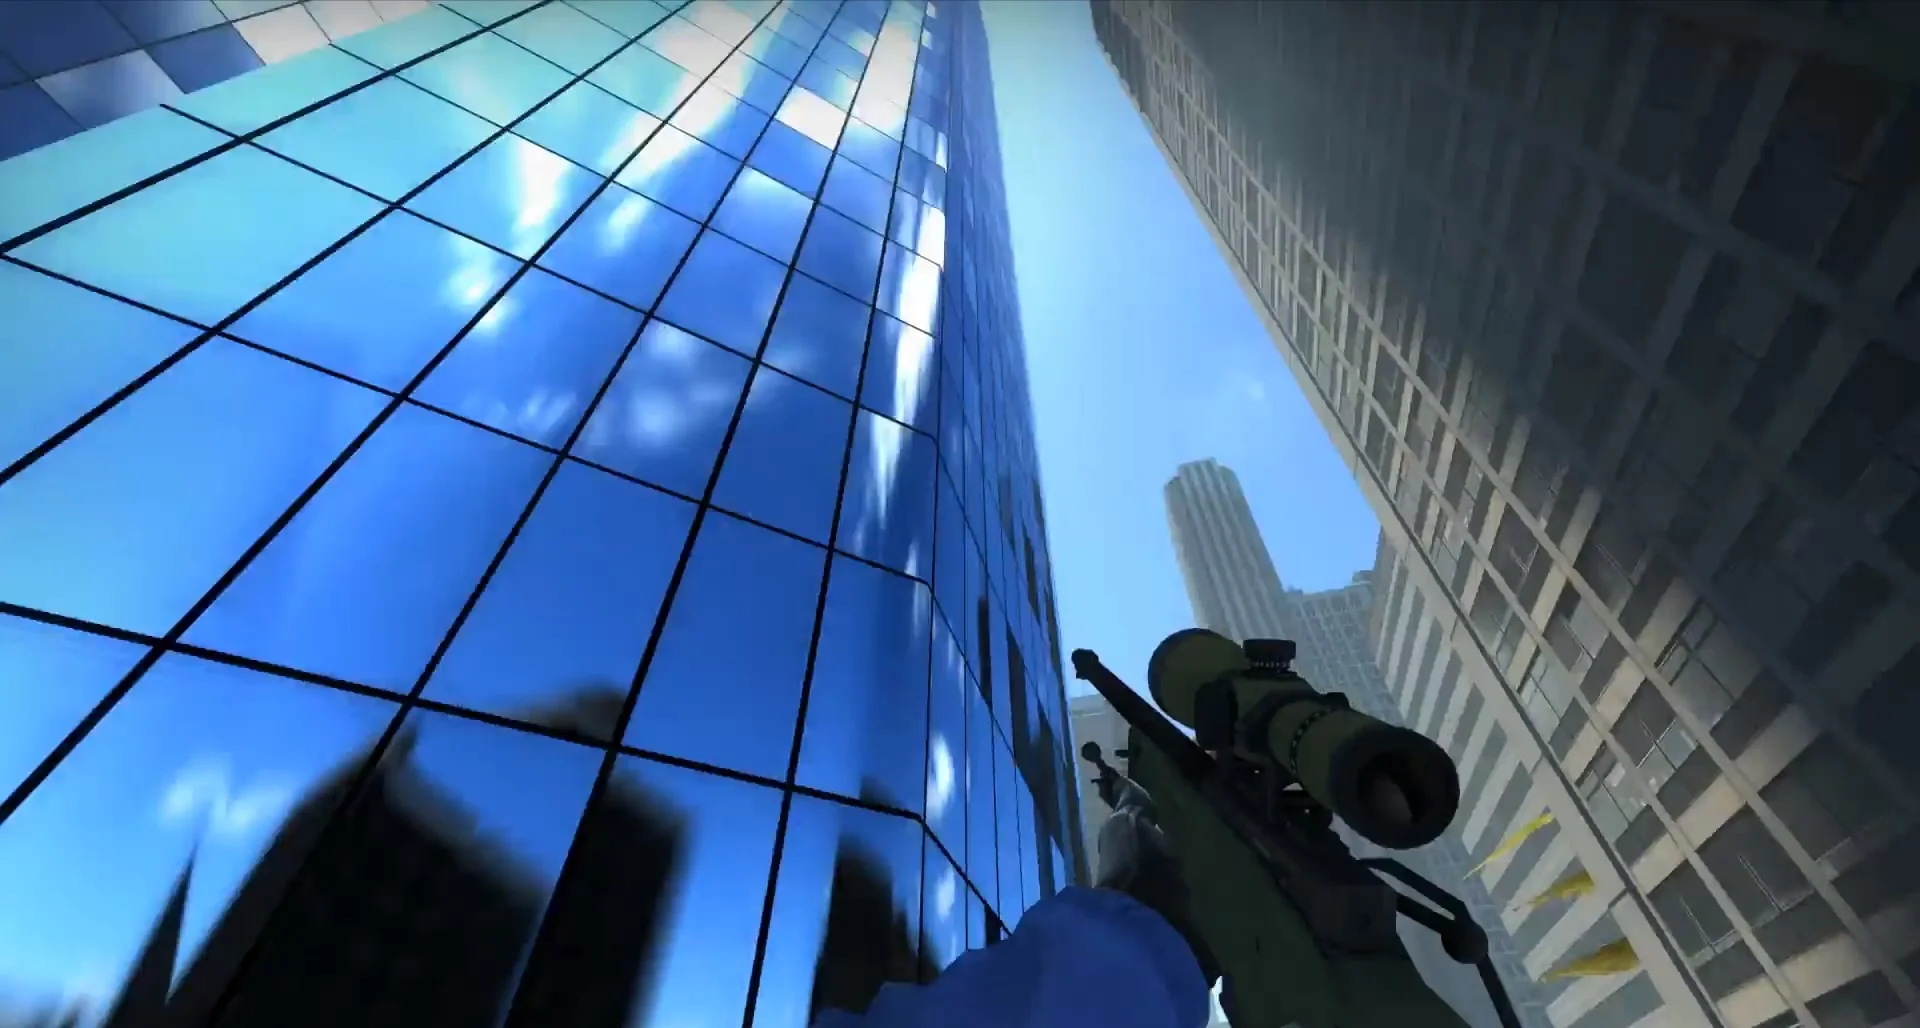 Игрок нашел способ выпрыгнуть за пределы карты Agency в CS:GO и спокойно погулять по городу - фото 1